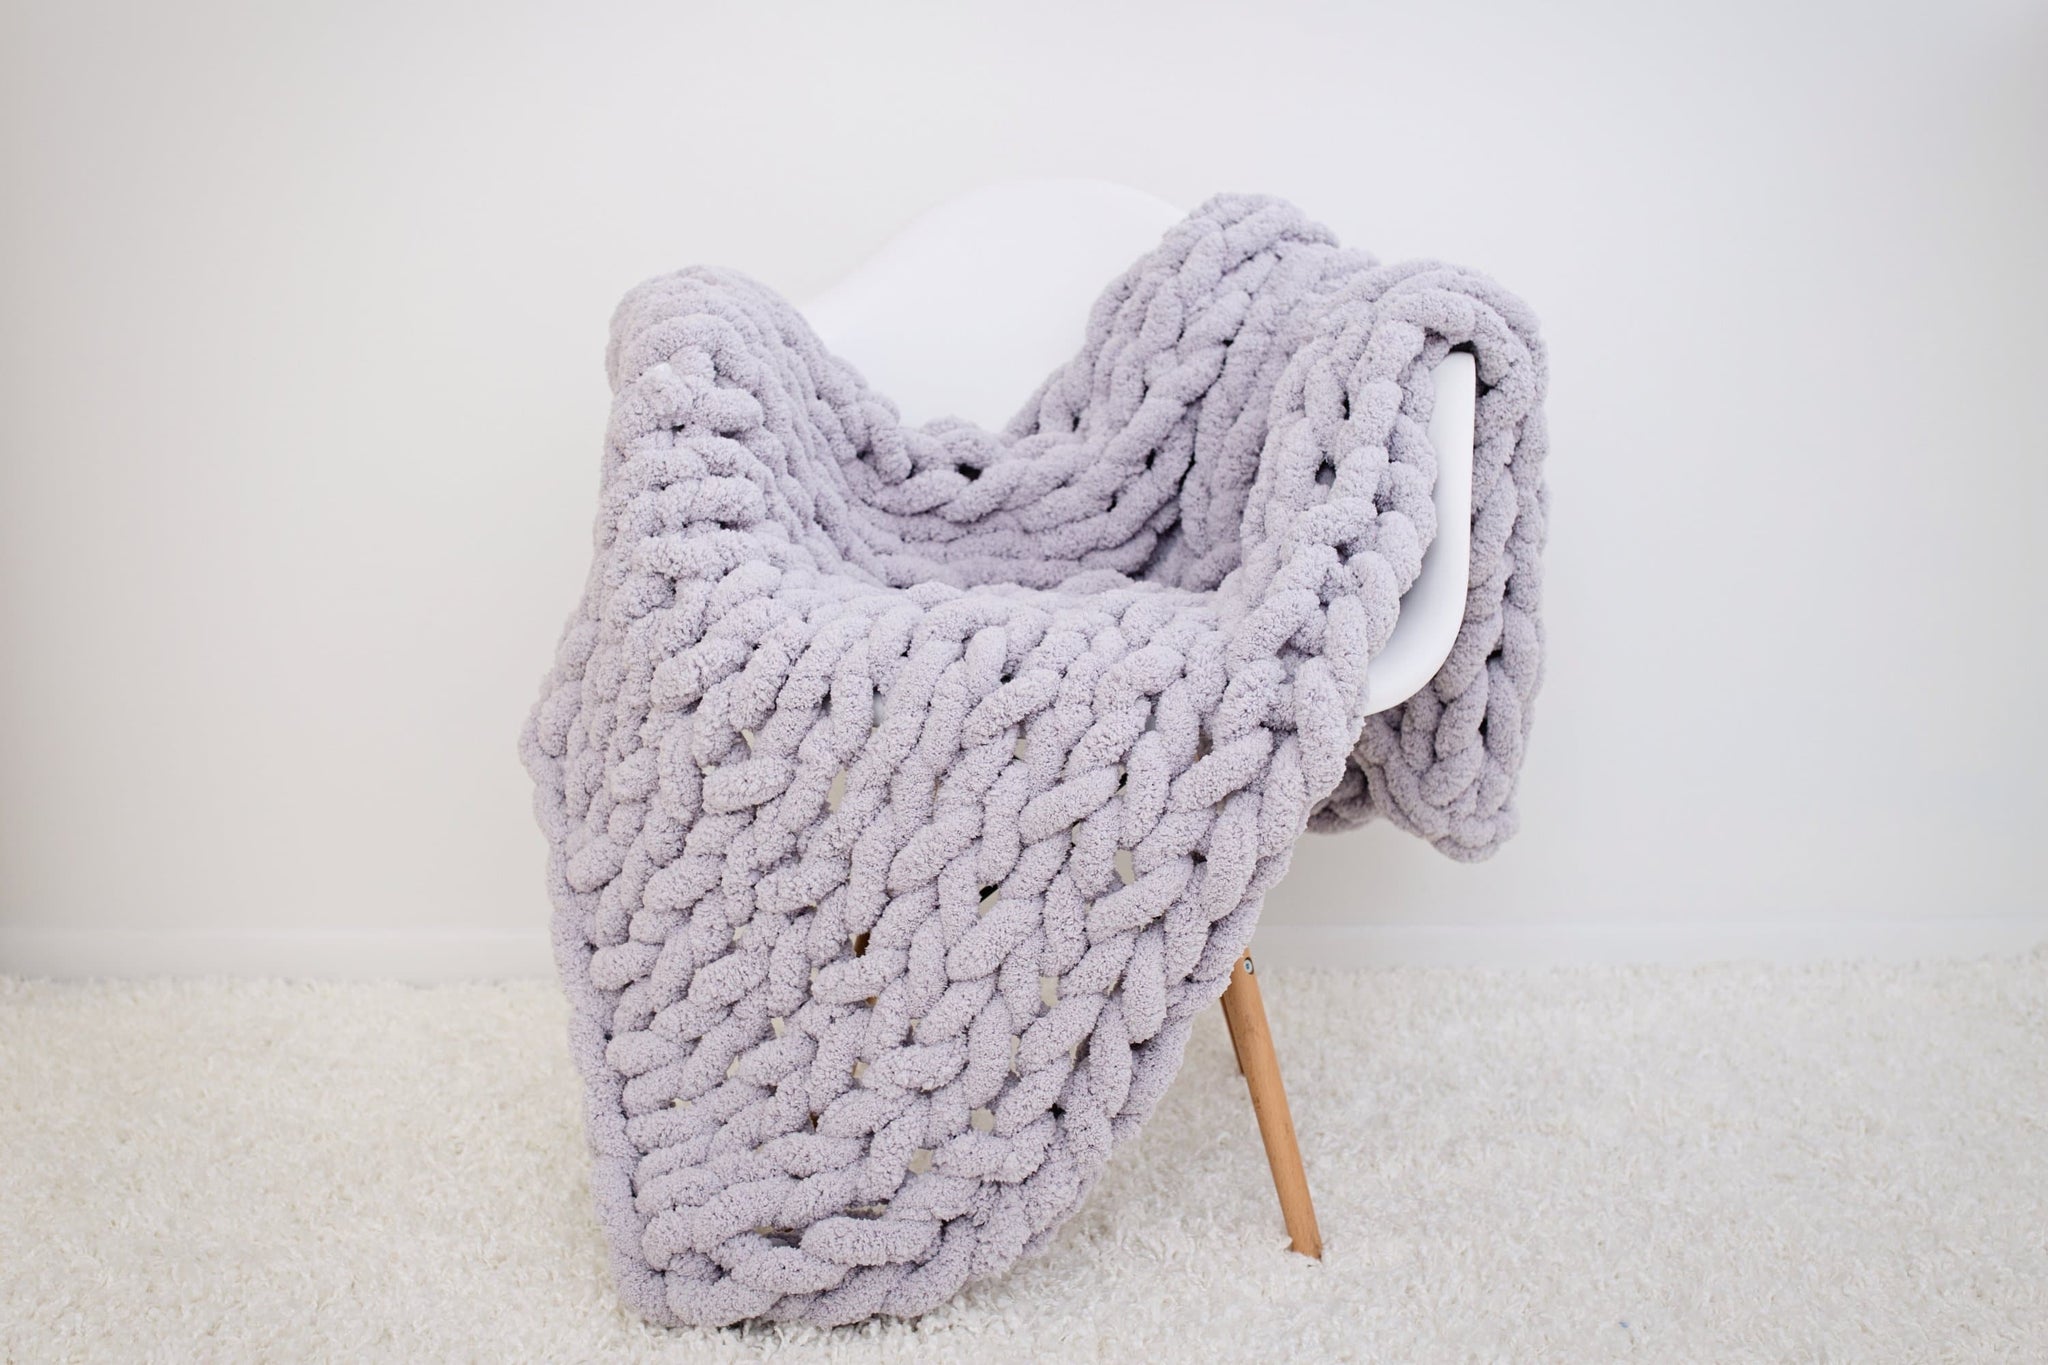 DIY Knit Kit for a blanket 40x60. Merino Wool & Giant Knitting Needles –  BeCozi